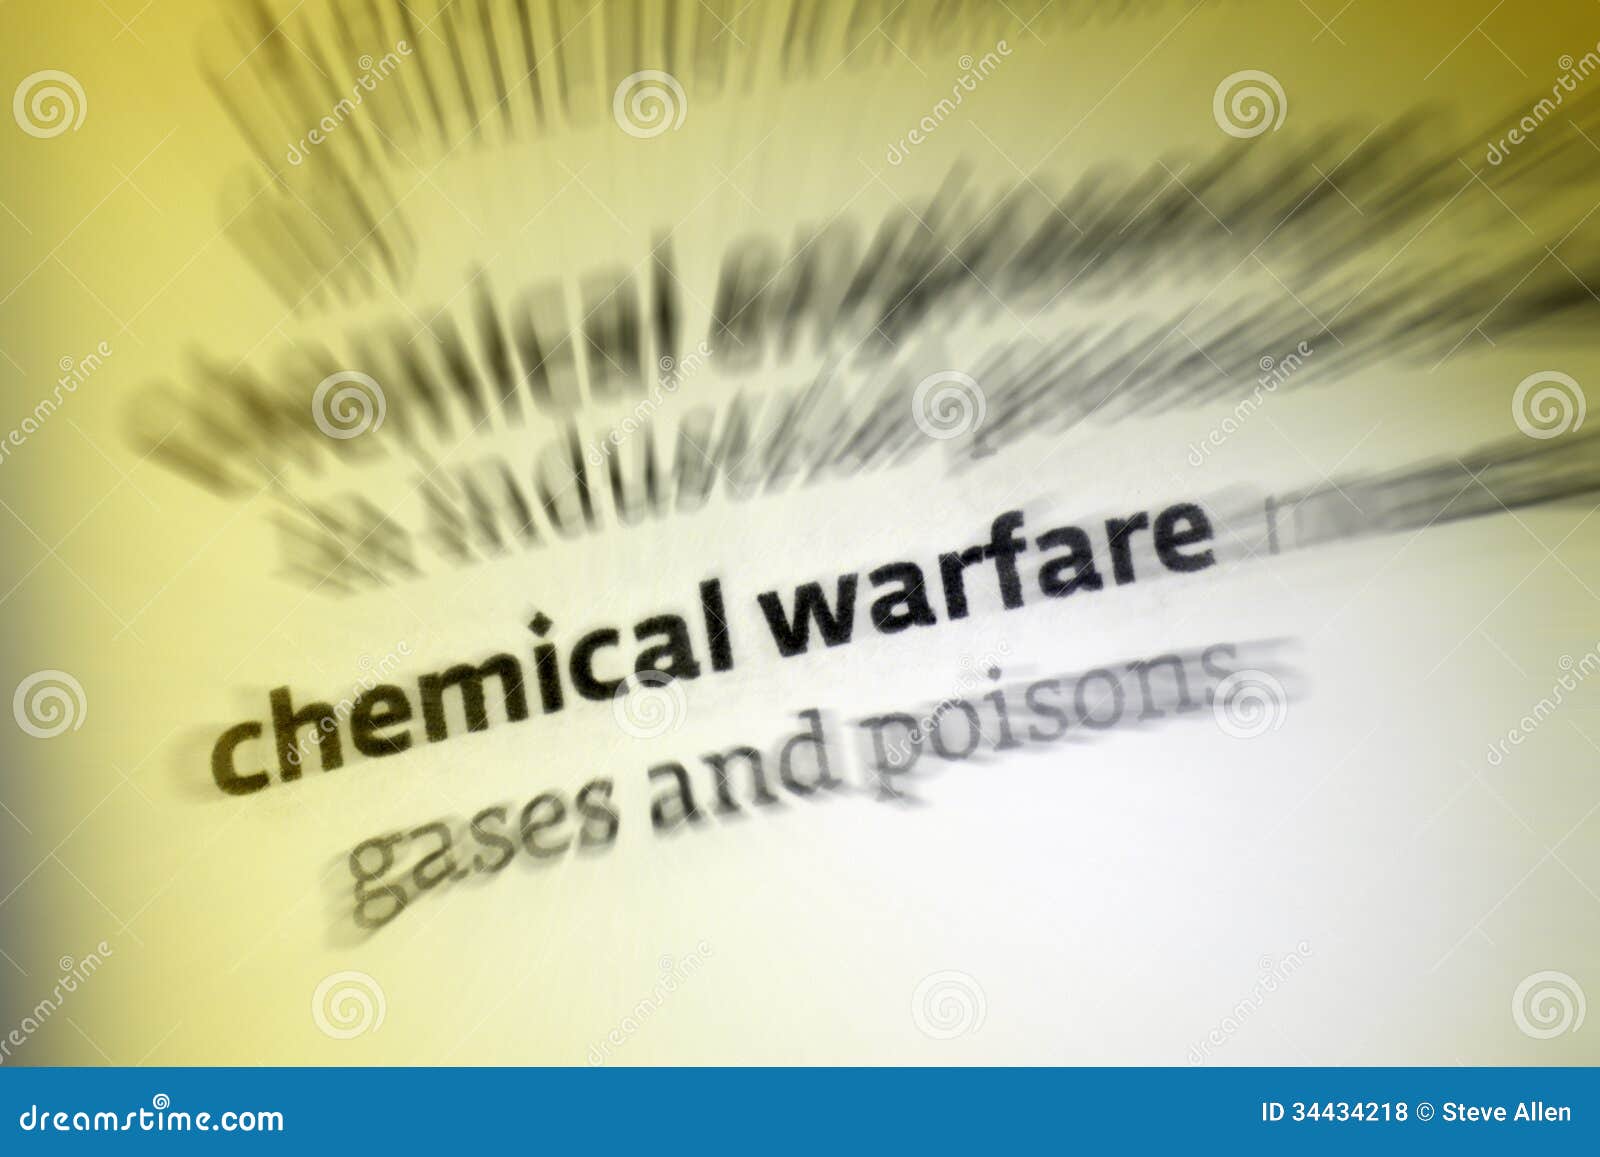 chemical warfare